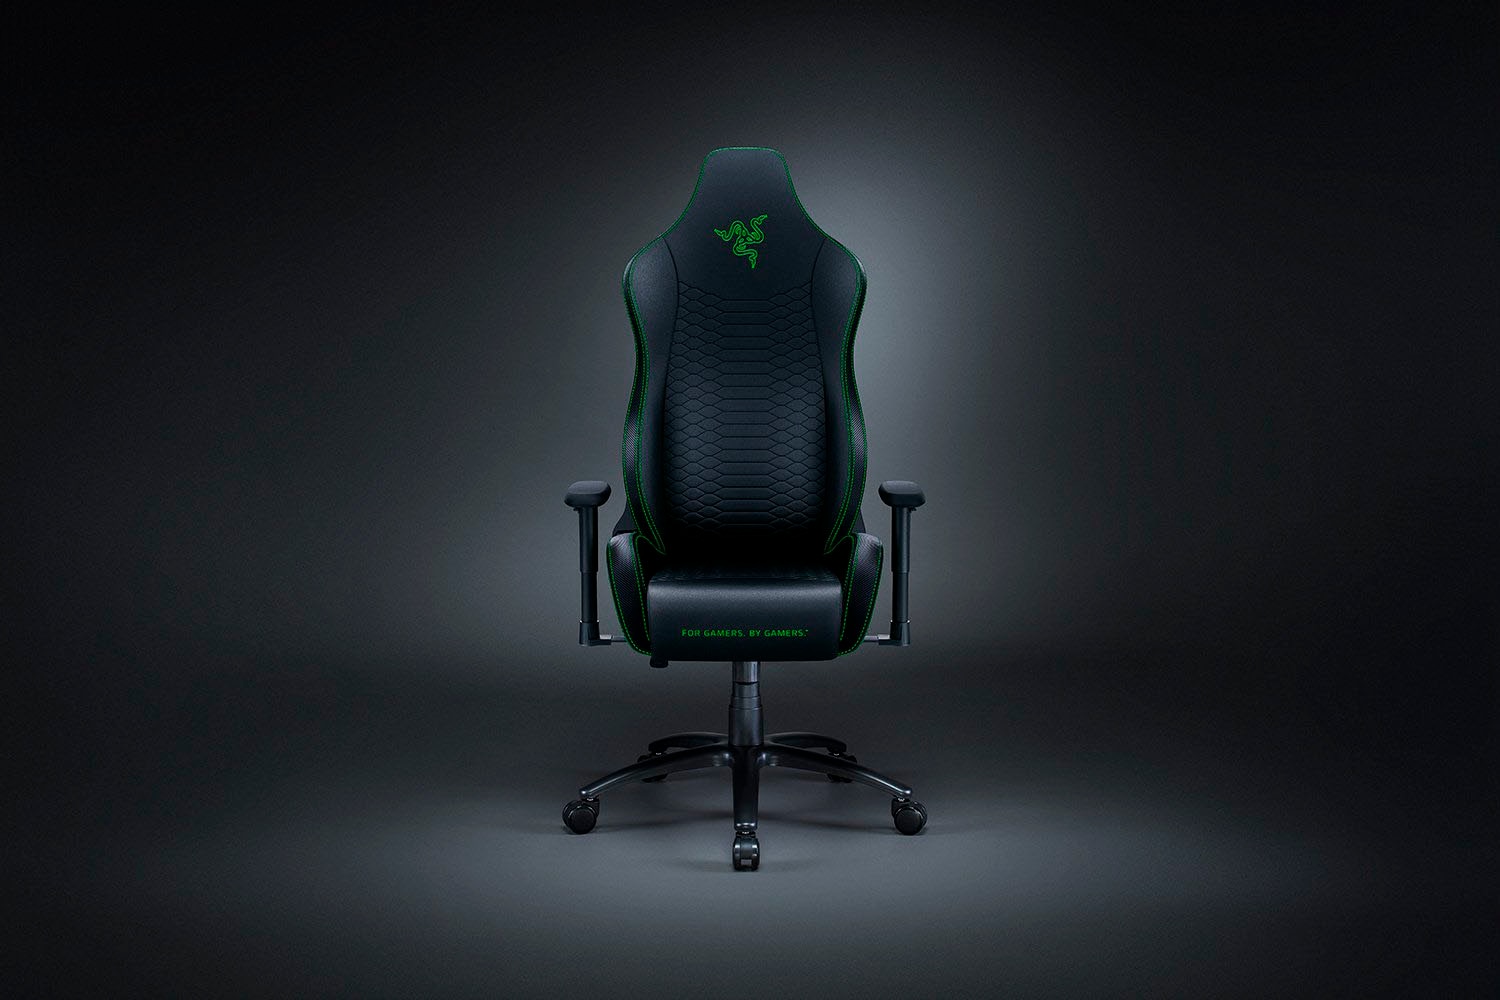 RAZER Gaming-Stuhl »Iskur X« ➥ 3 Jahre XXL Garantie | UNIVERSAL